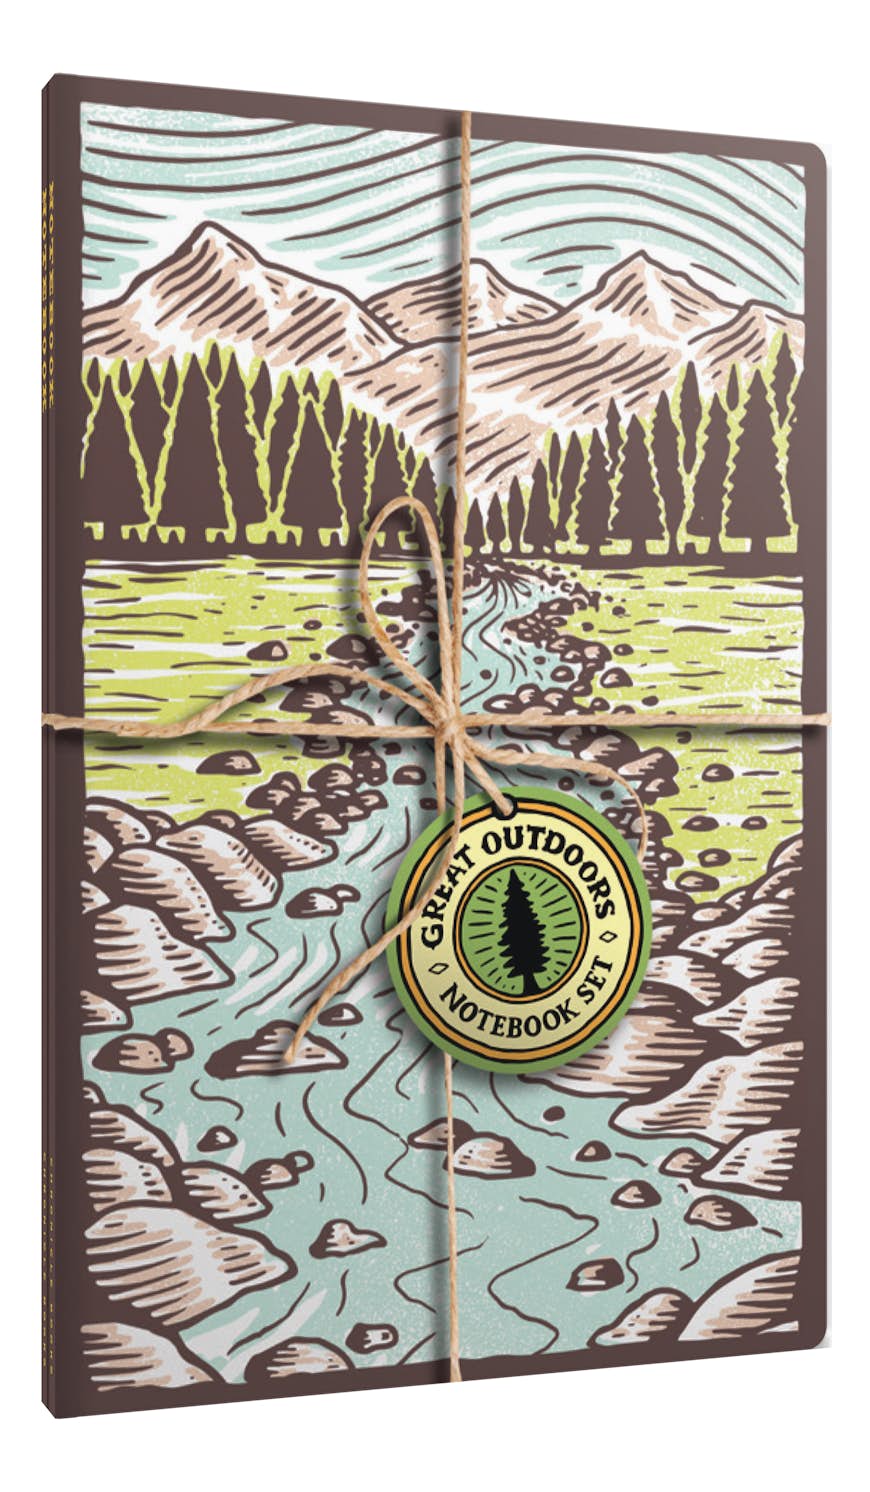 The Great Outdoors anteckningsboksset, med en präglad bild i träsnitt av en bergsbäck på omslaget 